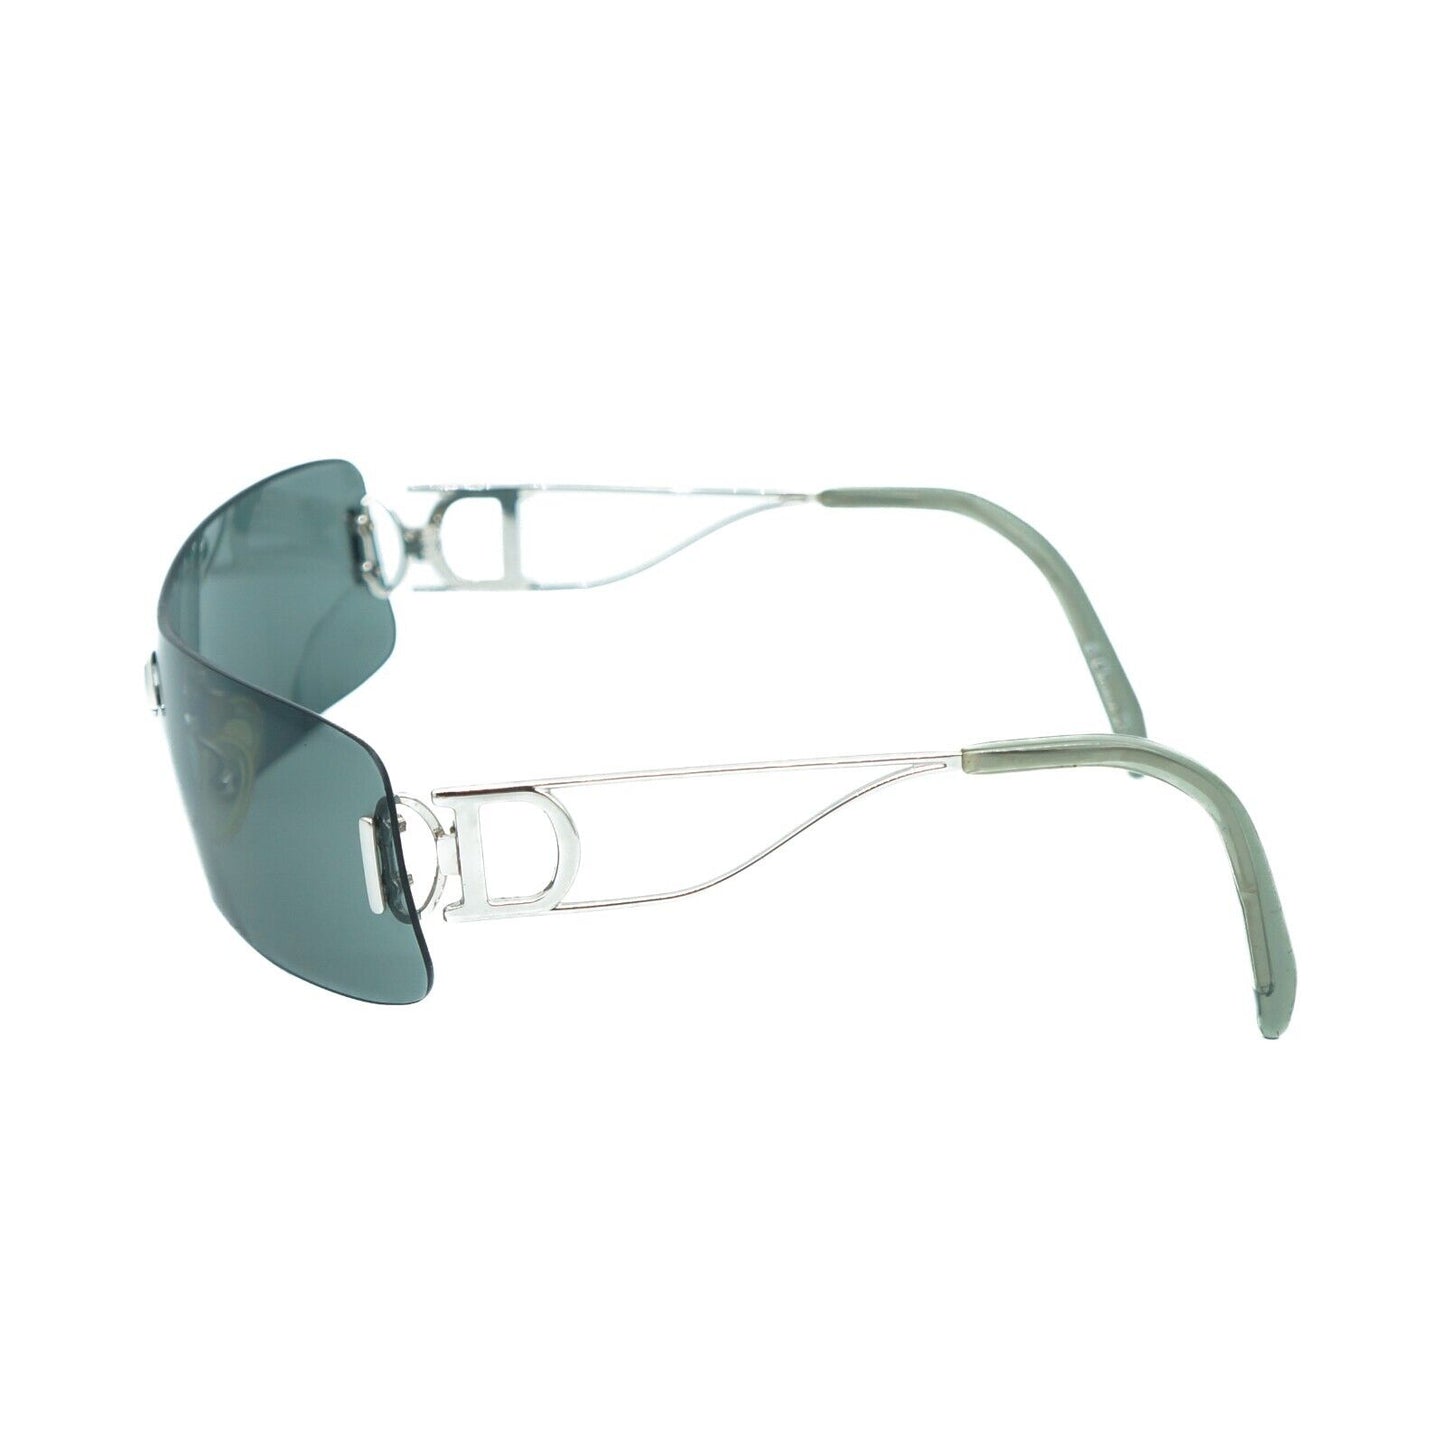 Christian DIOR MISS DIORELLA Silver Rimless Shield Sunglasses Vintage 90s 00s